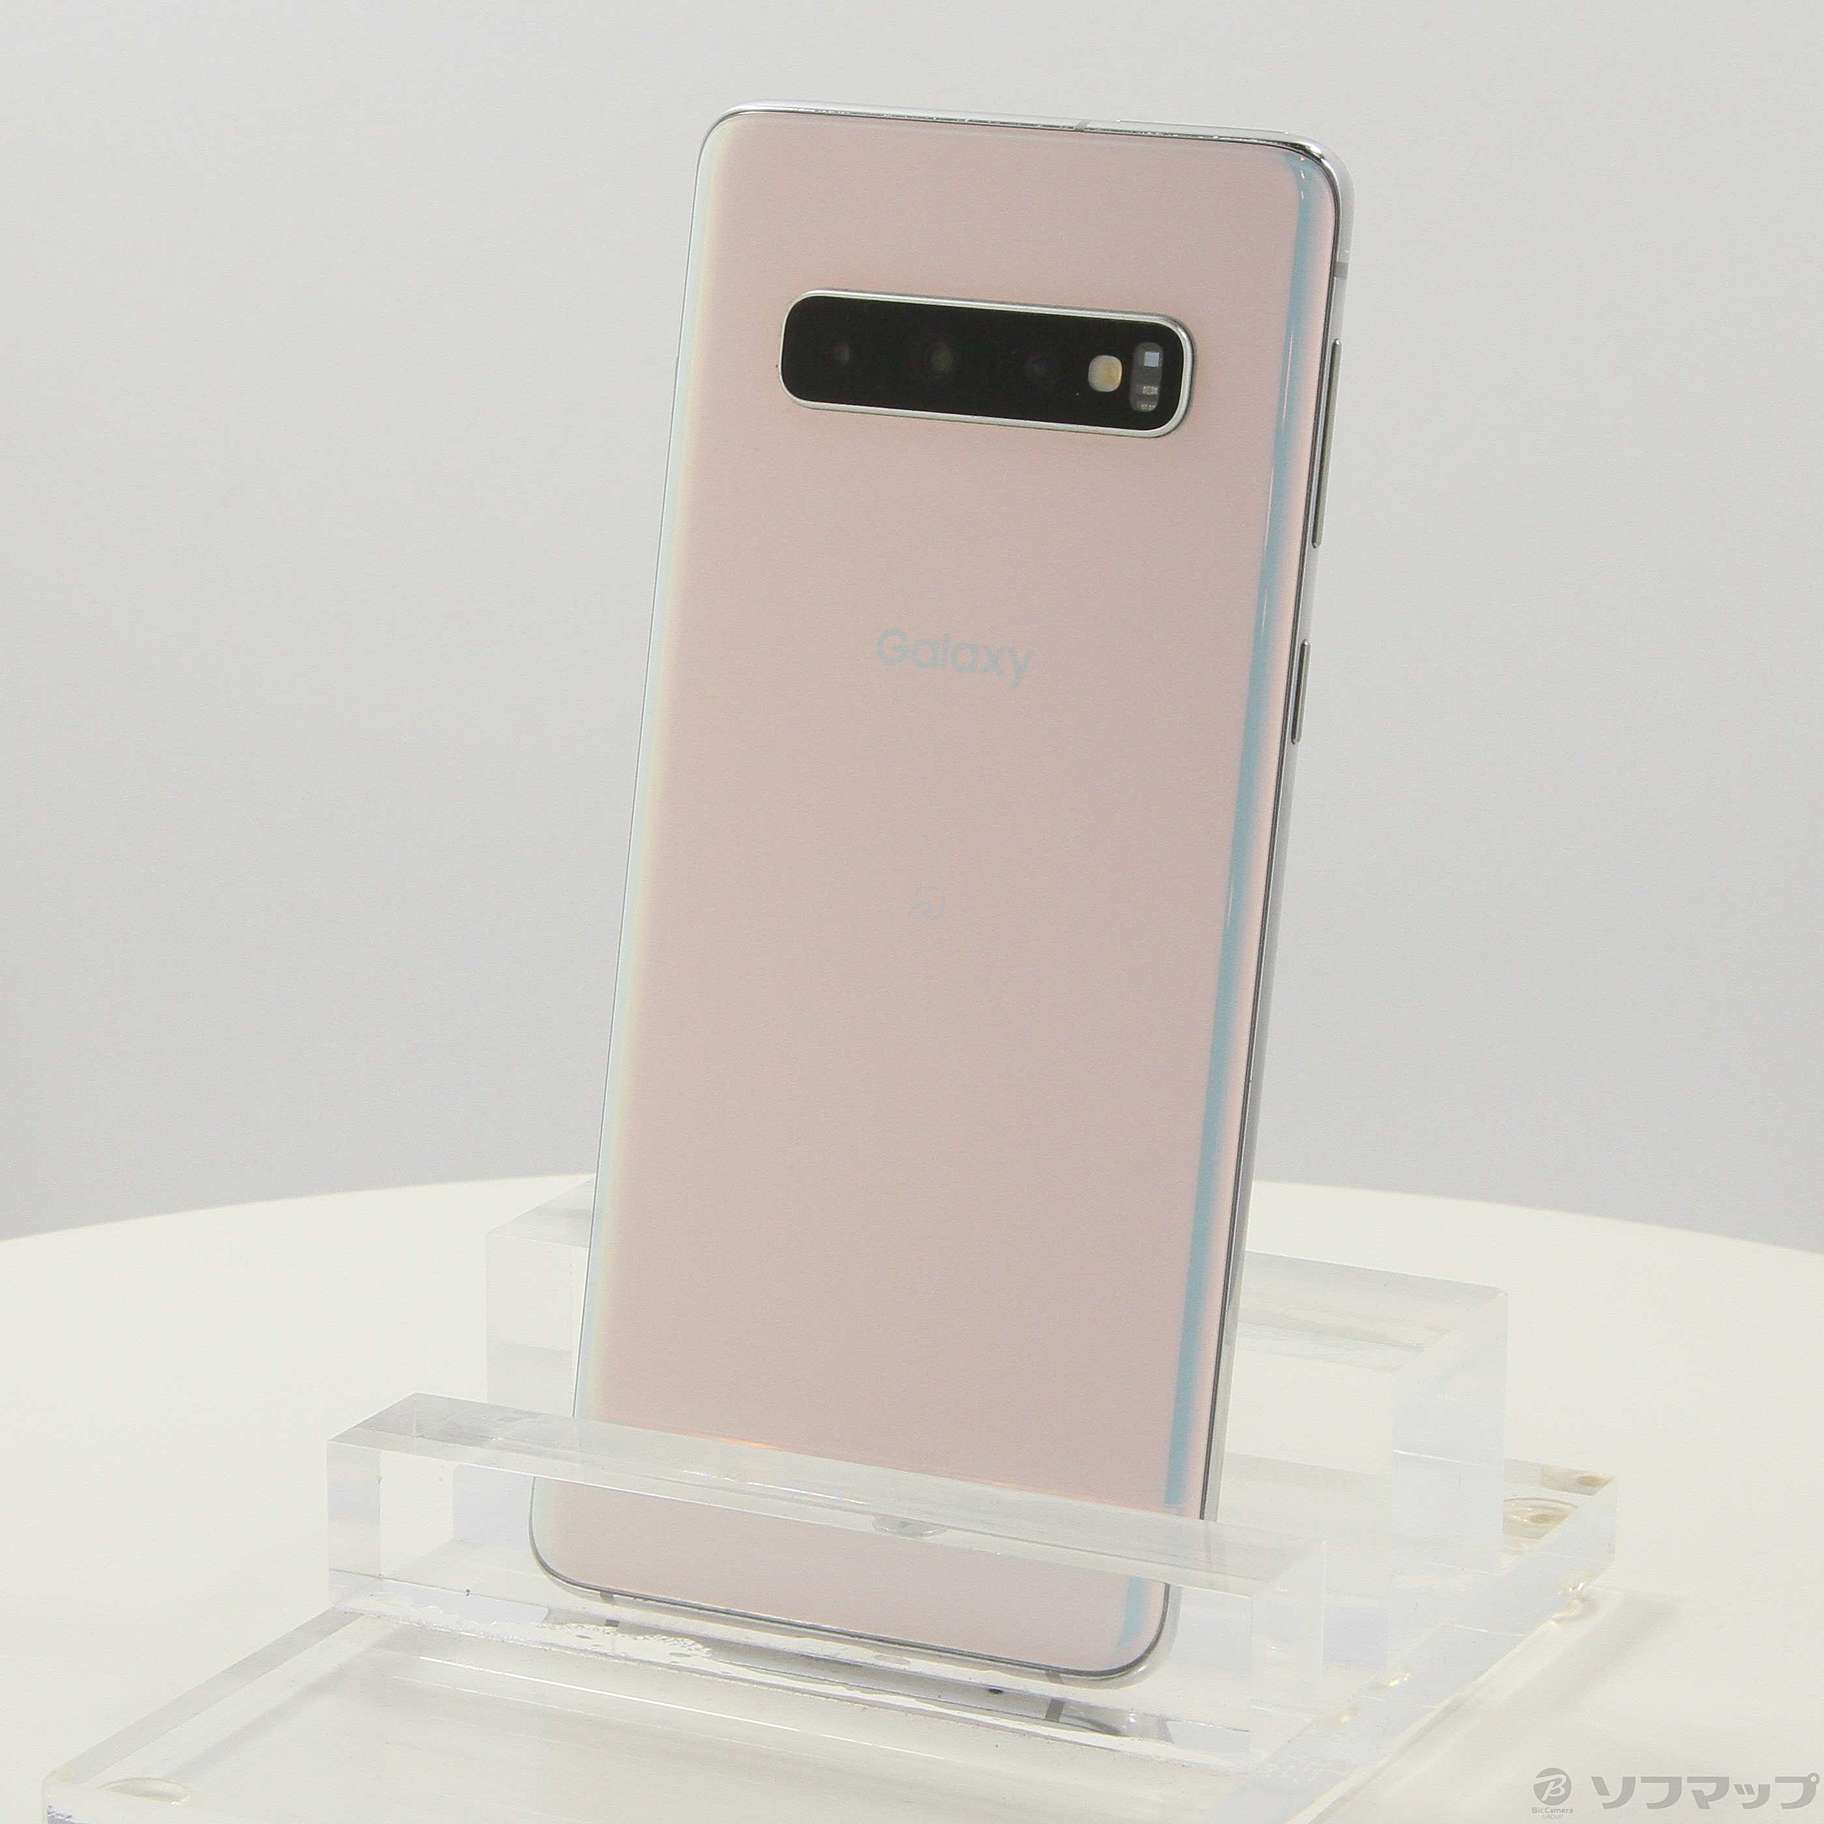 Galaxy S10 Prism White 128 GB auスマートフォン/携帯電話 